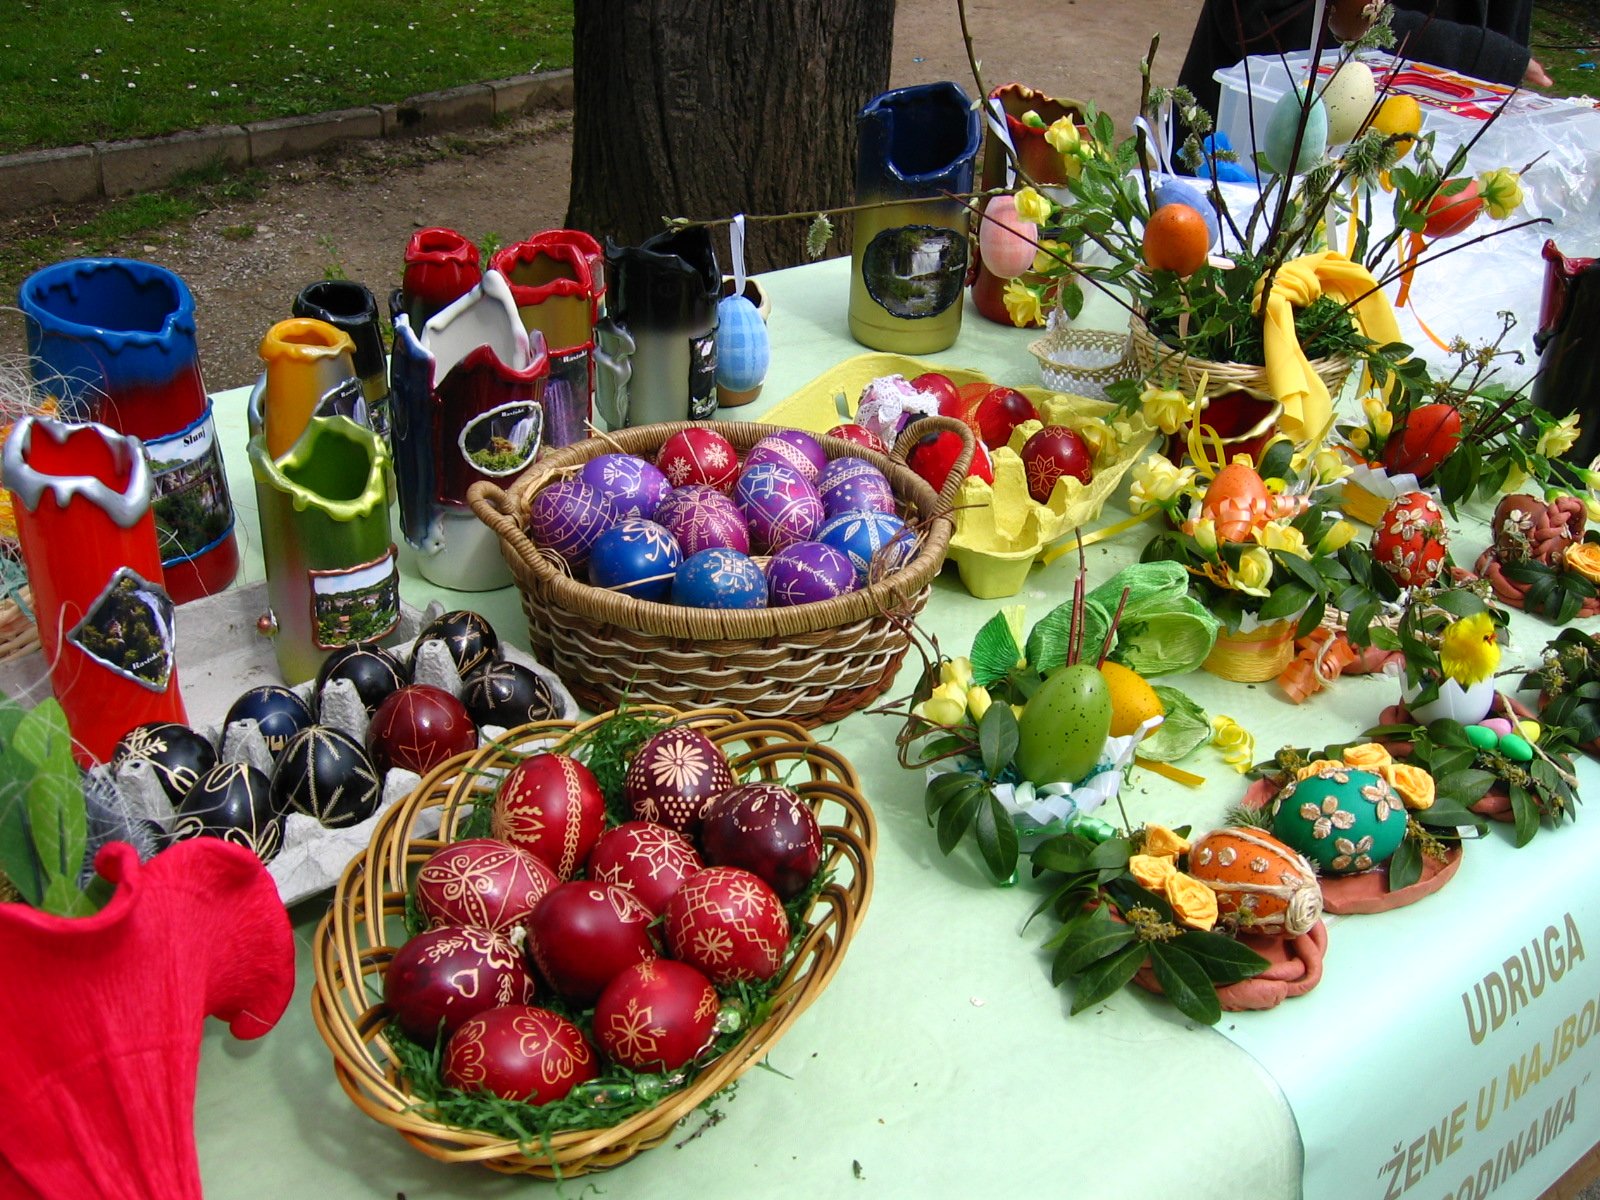 Canastas de huevos decorados para Pascua. | Imagen: Wikimedia Commons